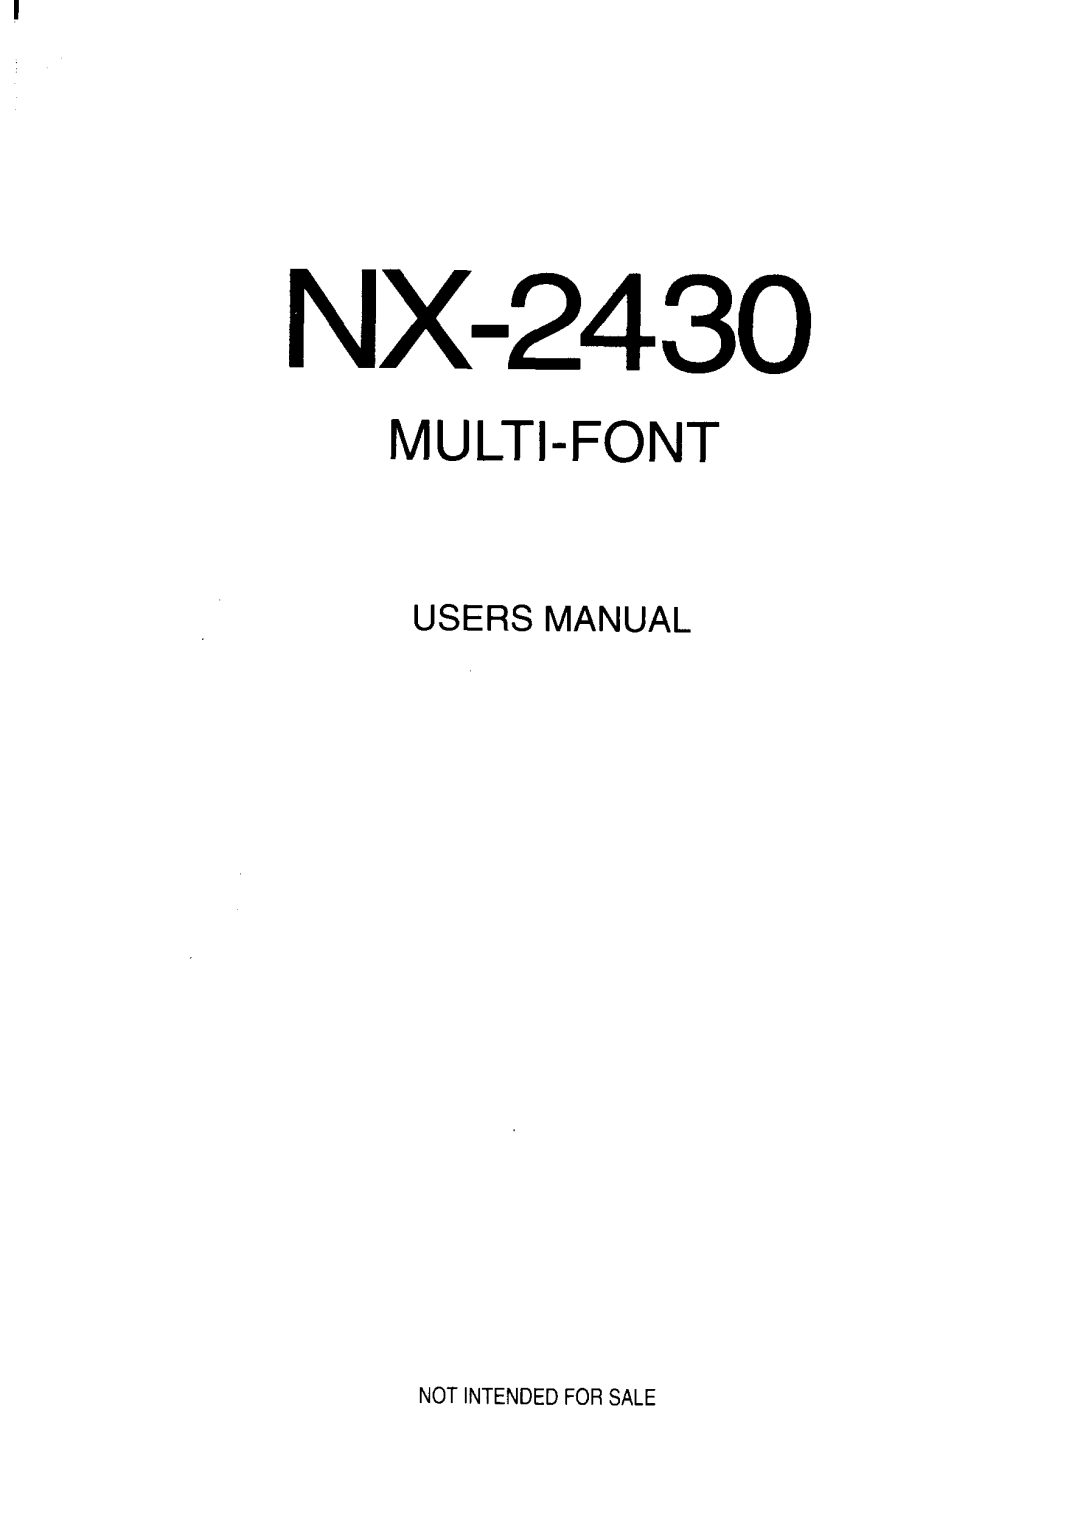 Star Micronics NX-2430 manual N I F S Nte A O 